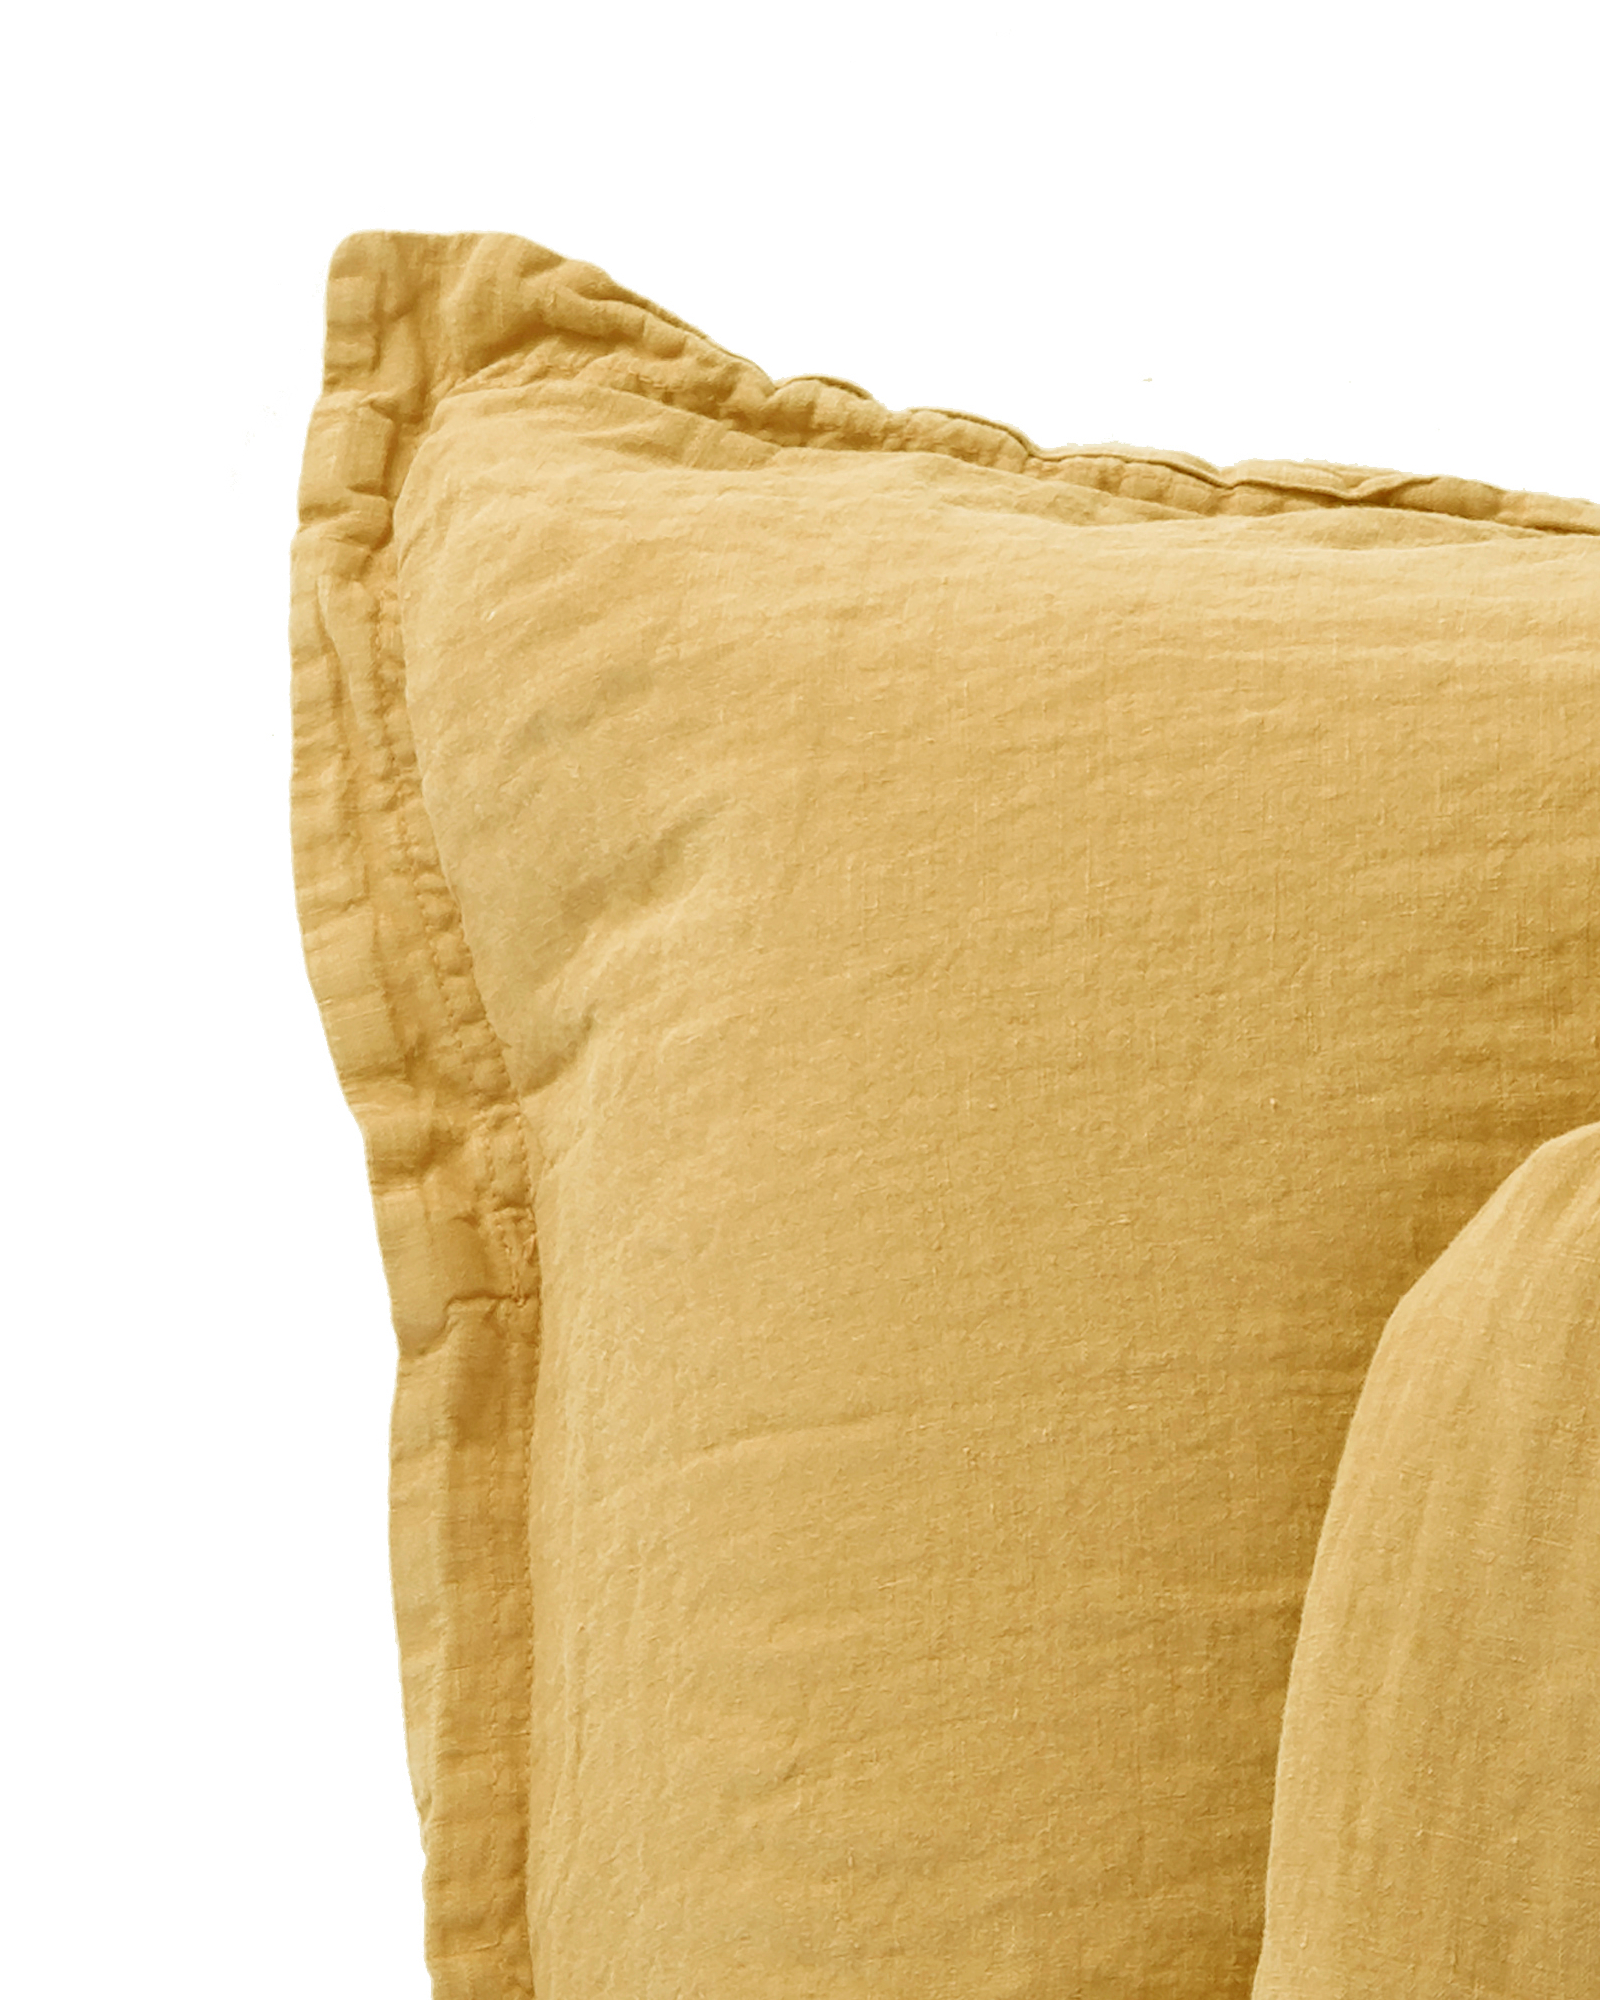 MARIE-MARIE - Pillowcase LINEN STORIES Sweet corn - 50x75 cm - Sweet corn